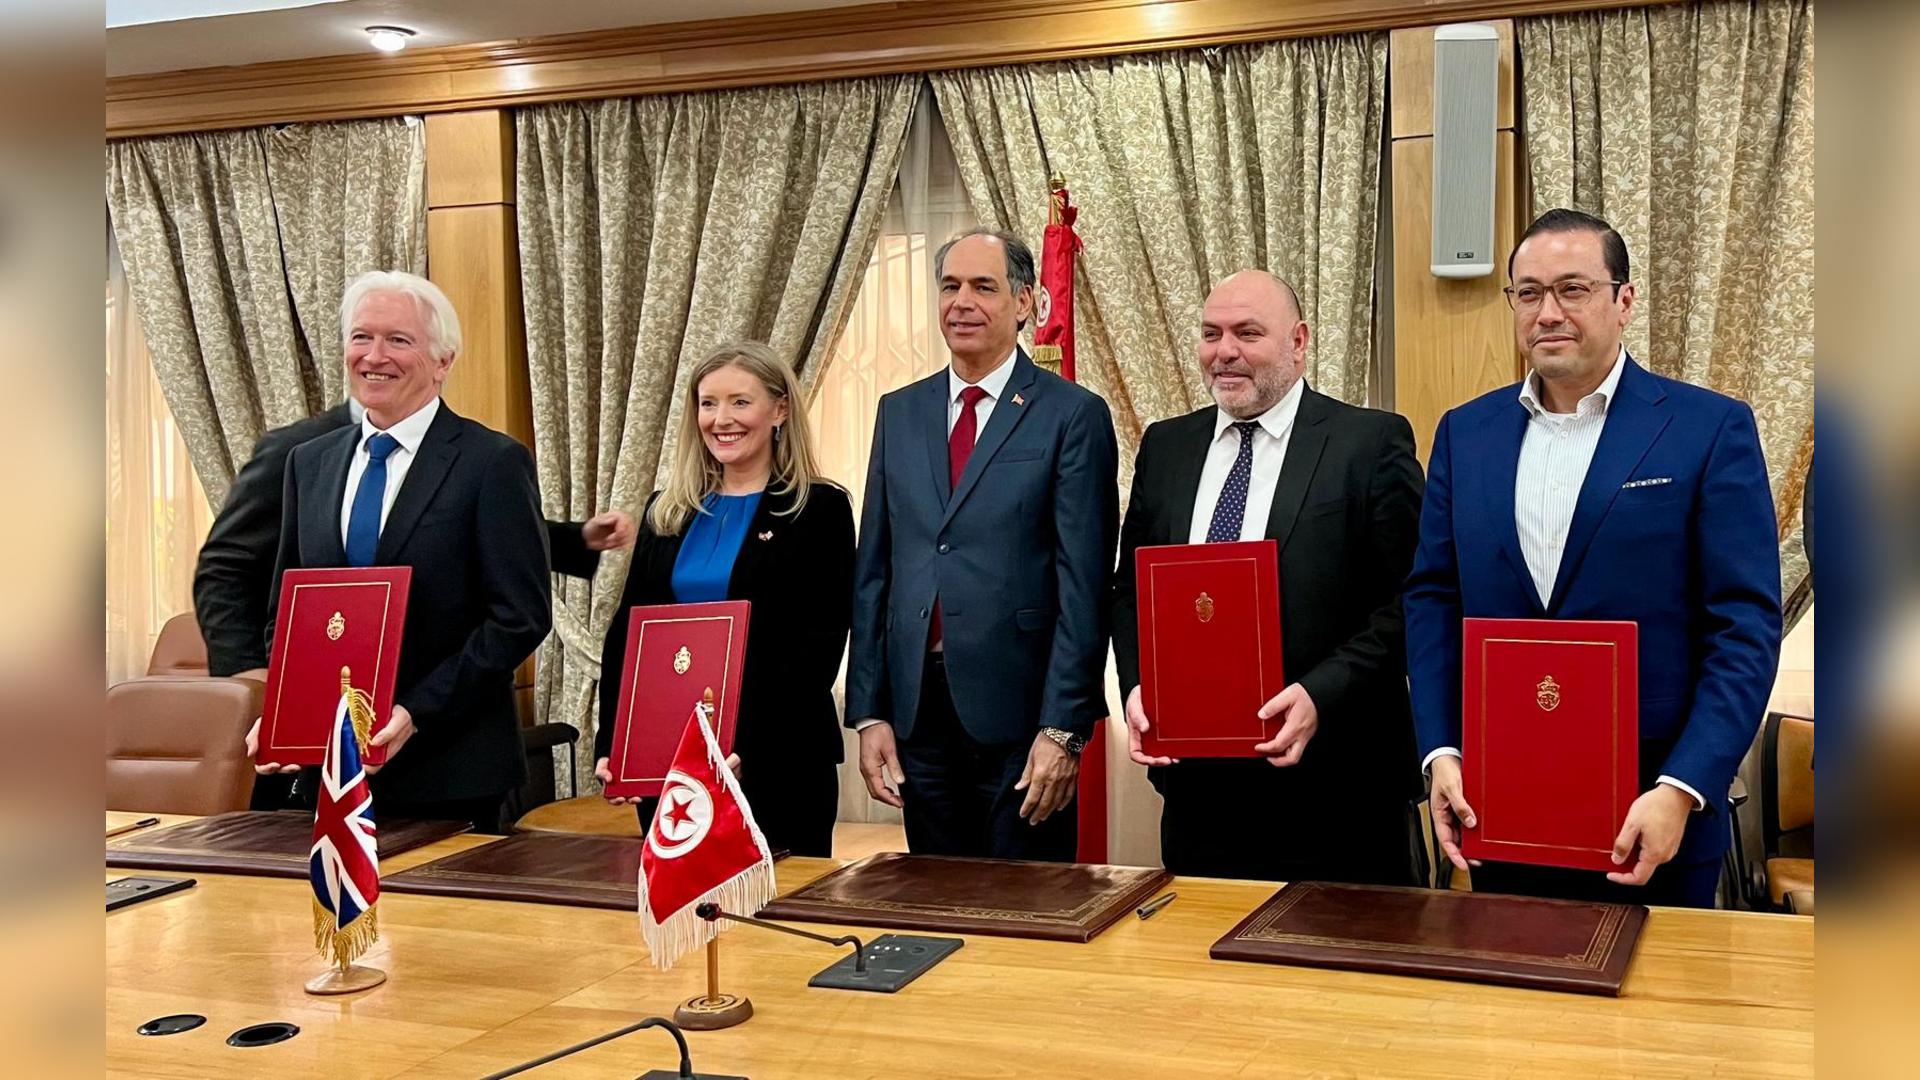 Un nouveau fond pour développer les échanges entre l’Université d’Oxford et les universités tunisiennes